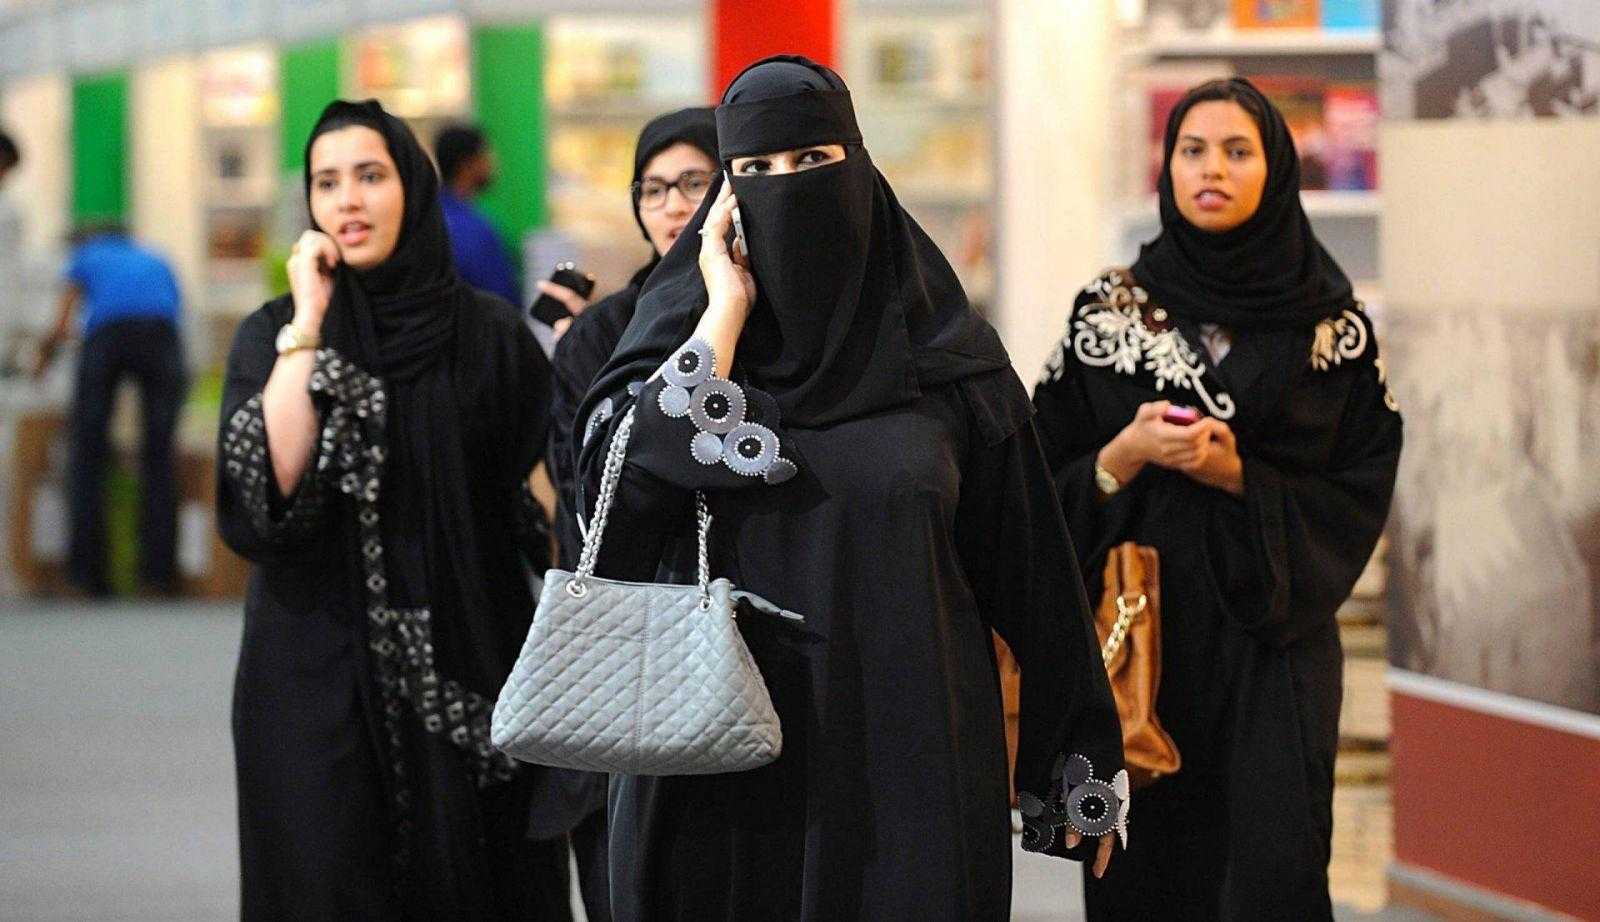 Самая красивая женщина саудовской аравии